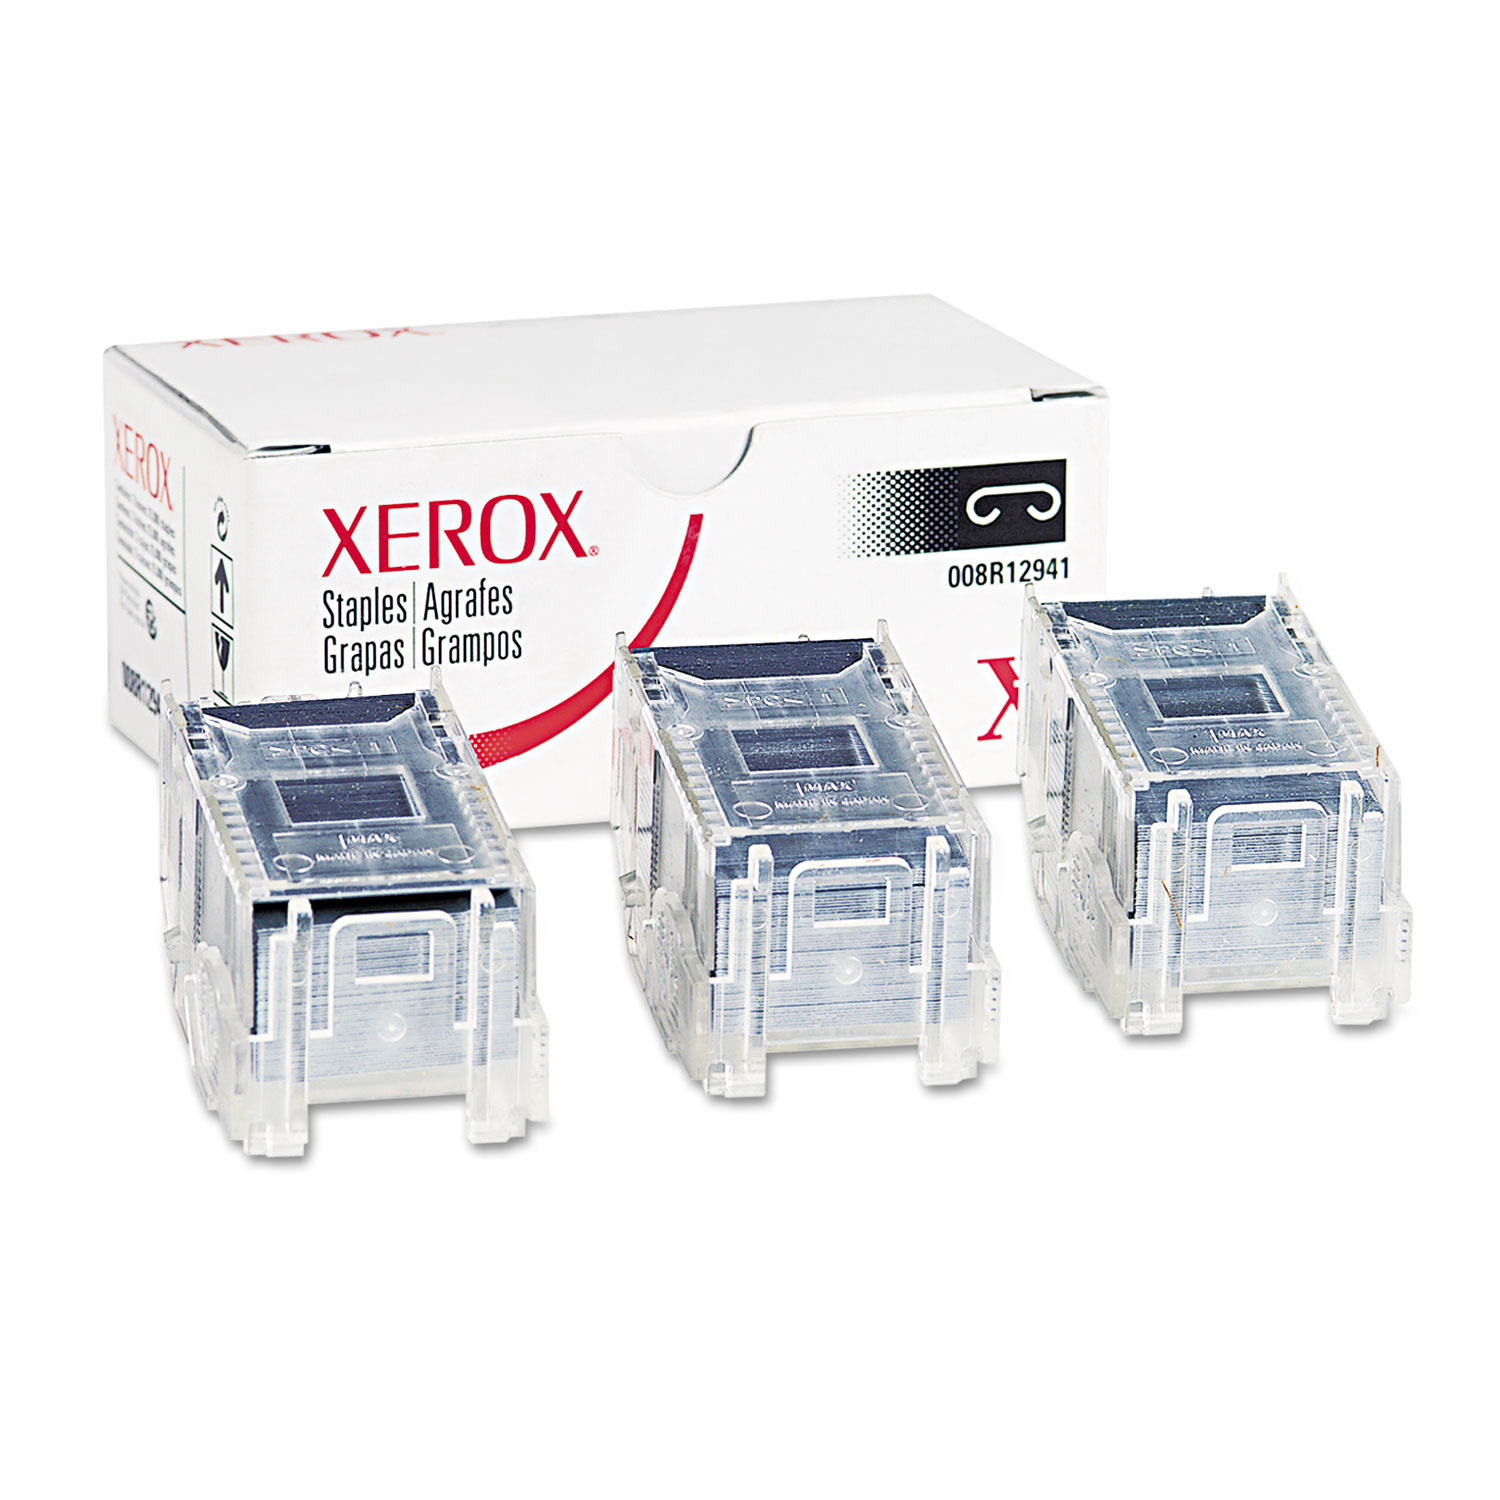  Xerox 008R12941 Finisher Staples for Xerox 7760/4150, Three Cartridges, 15,000 Staples/Pack (XER008R12941) 